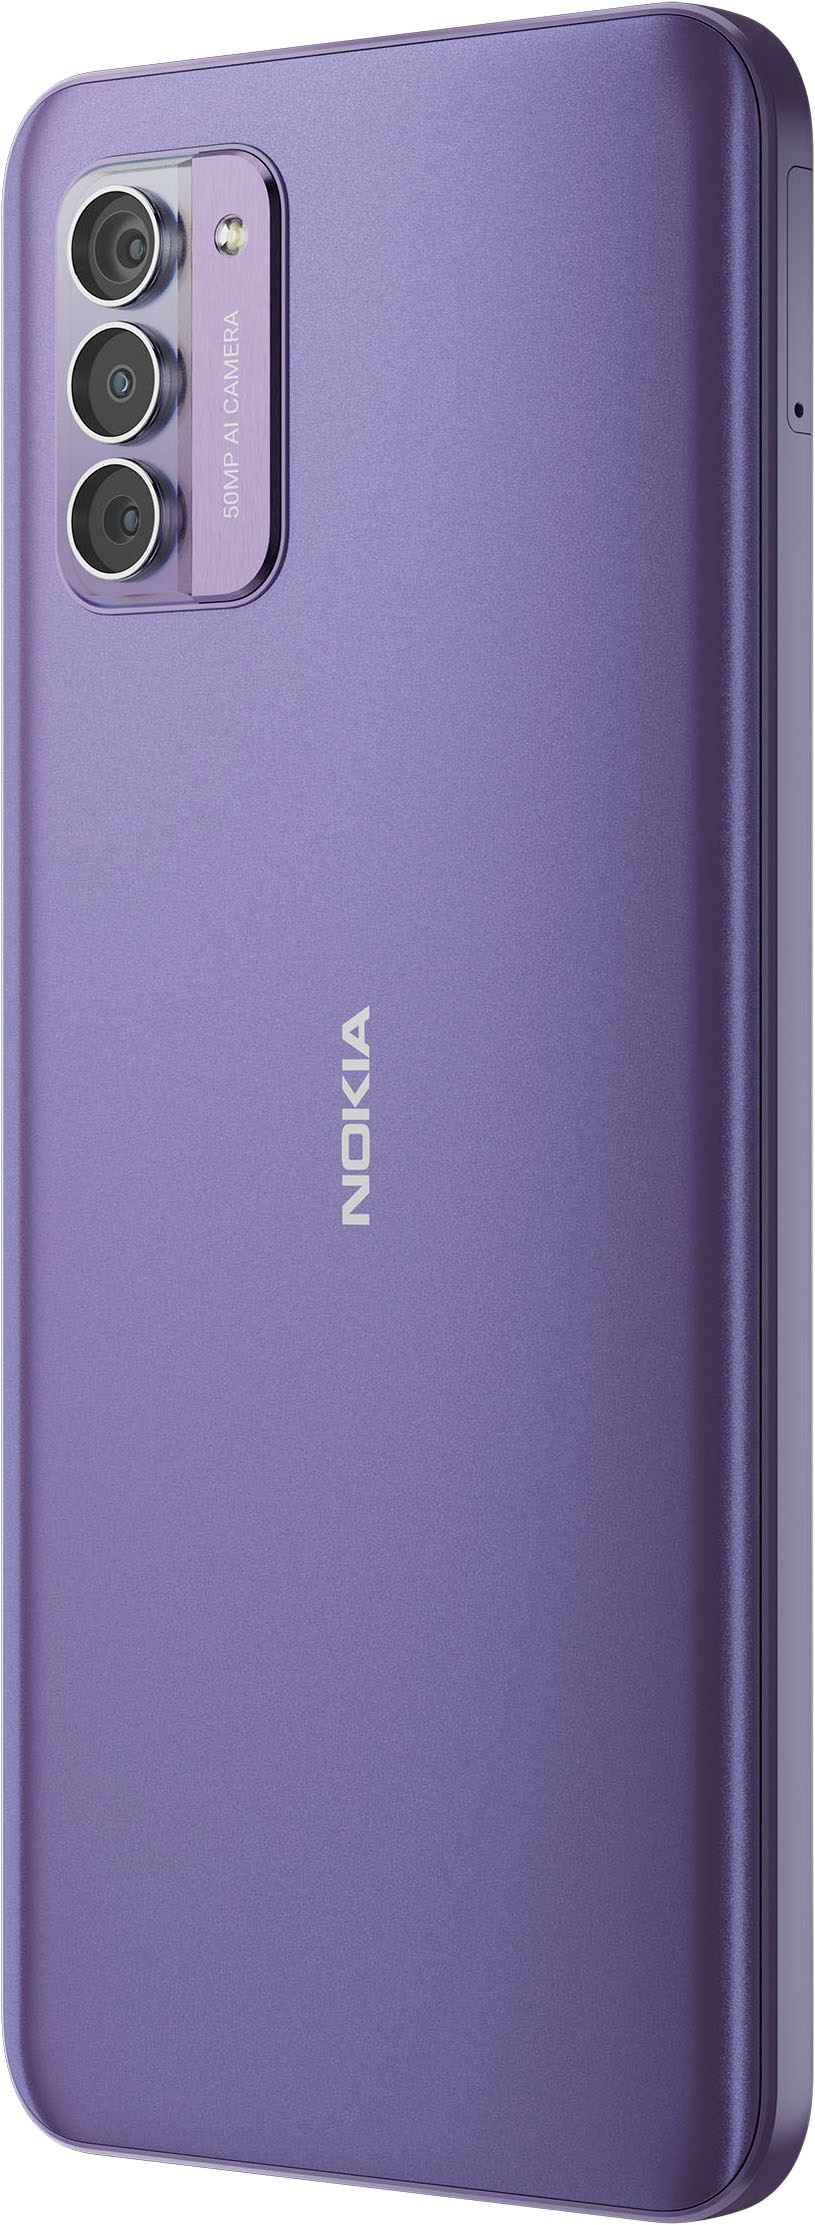 Speicherplatz, MP OTTO jetzt »G42«, purple, GB Zoll, 16,9 kaufen Nokia bei Kamera 128 50 cm/6,65 Smartphone